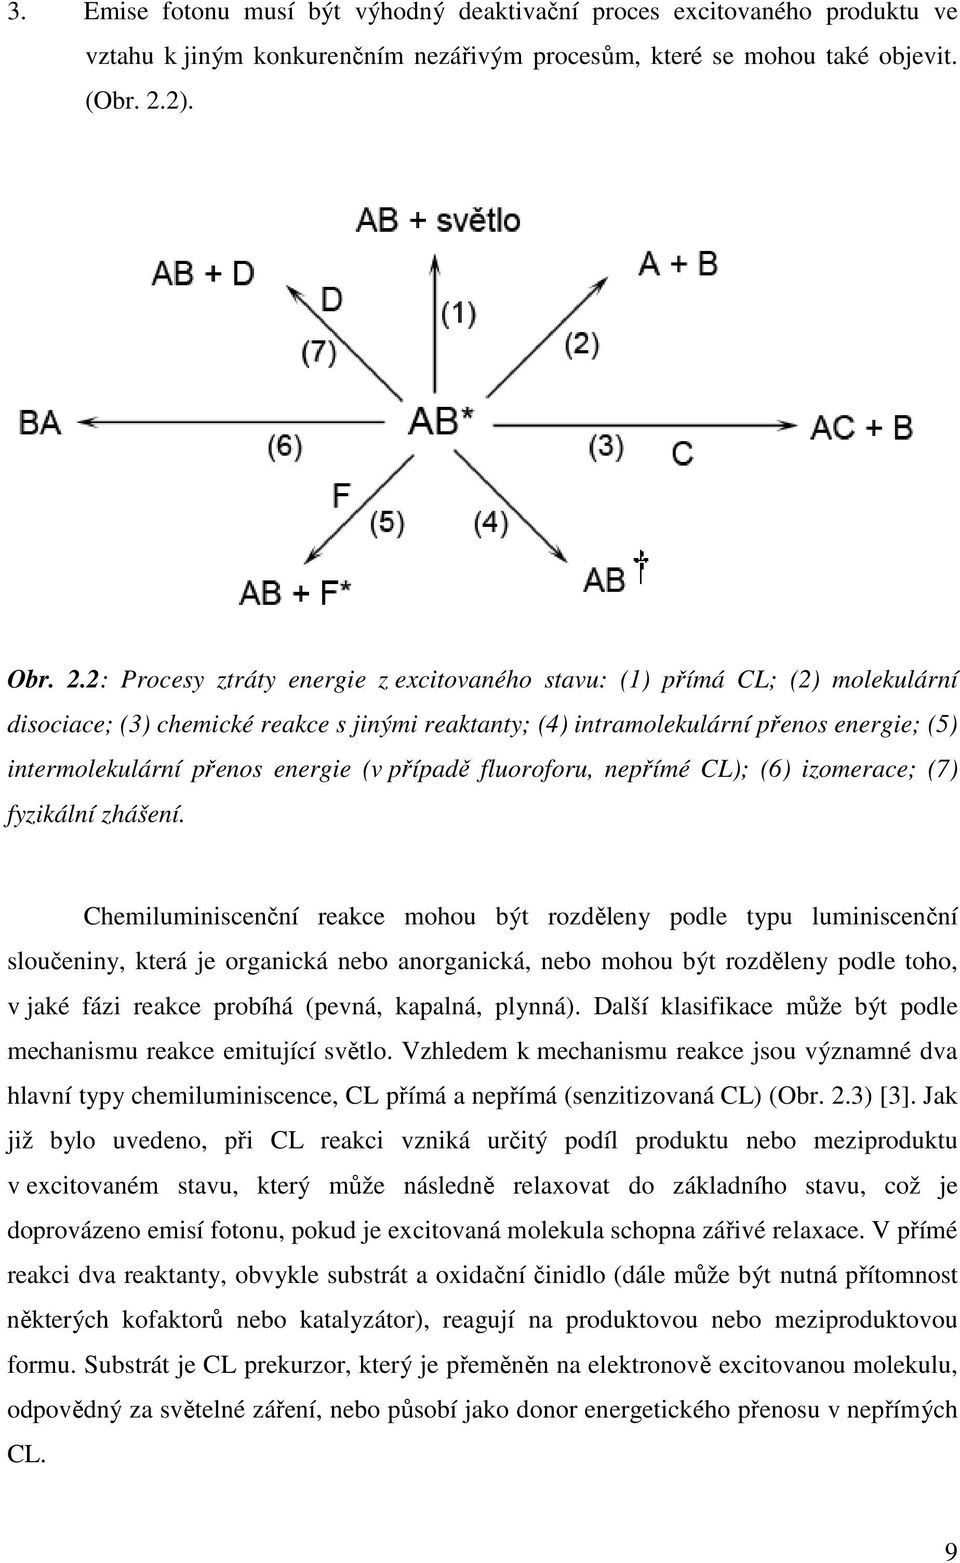 2: Procesy ztráty energie z excitovaného stavu: (1) přímá CL; (2) molekulární disociace; (3) chemické reakce s jinými reaktanty; (4) intramolekulární přenos energie; (5) intermolekulární přenos